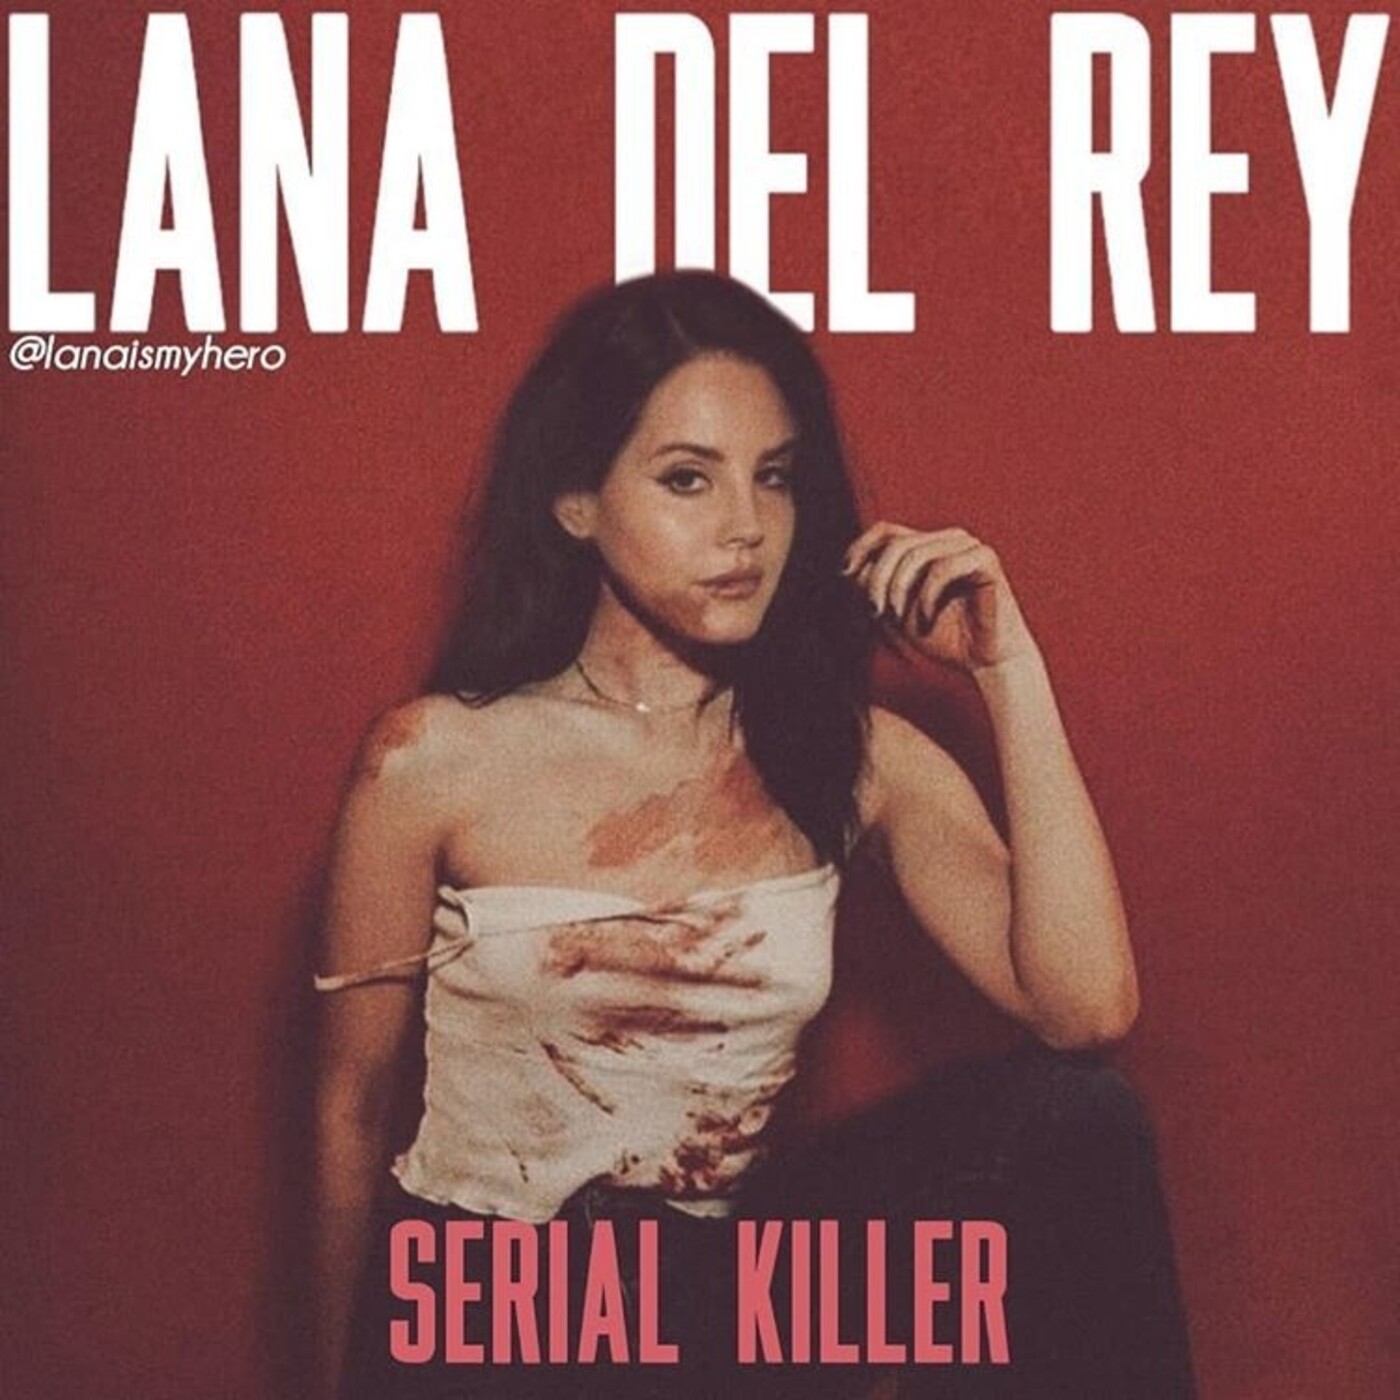 Lana Del Rey - Serial Killer